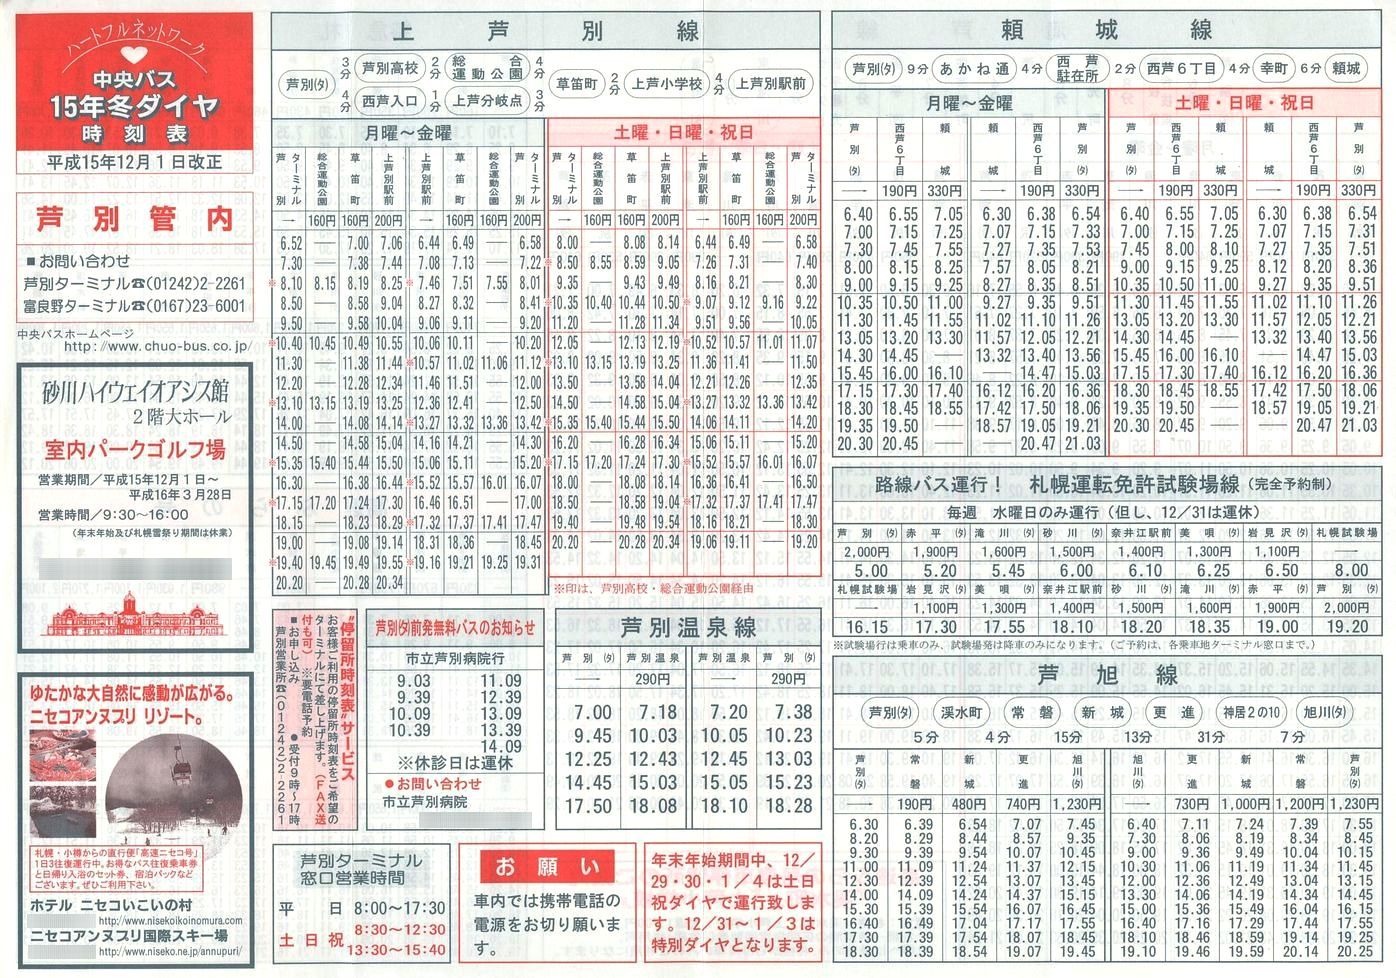 2003-12-01改正_北海道中央バス(空知)_芦別管内線時刻表表面